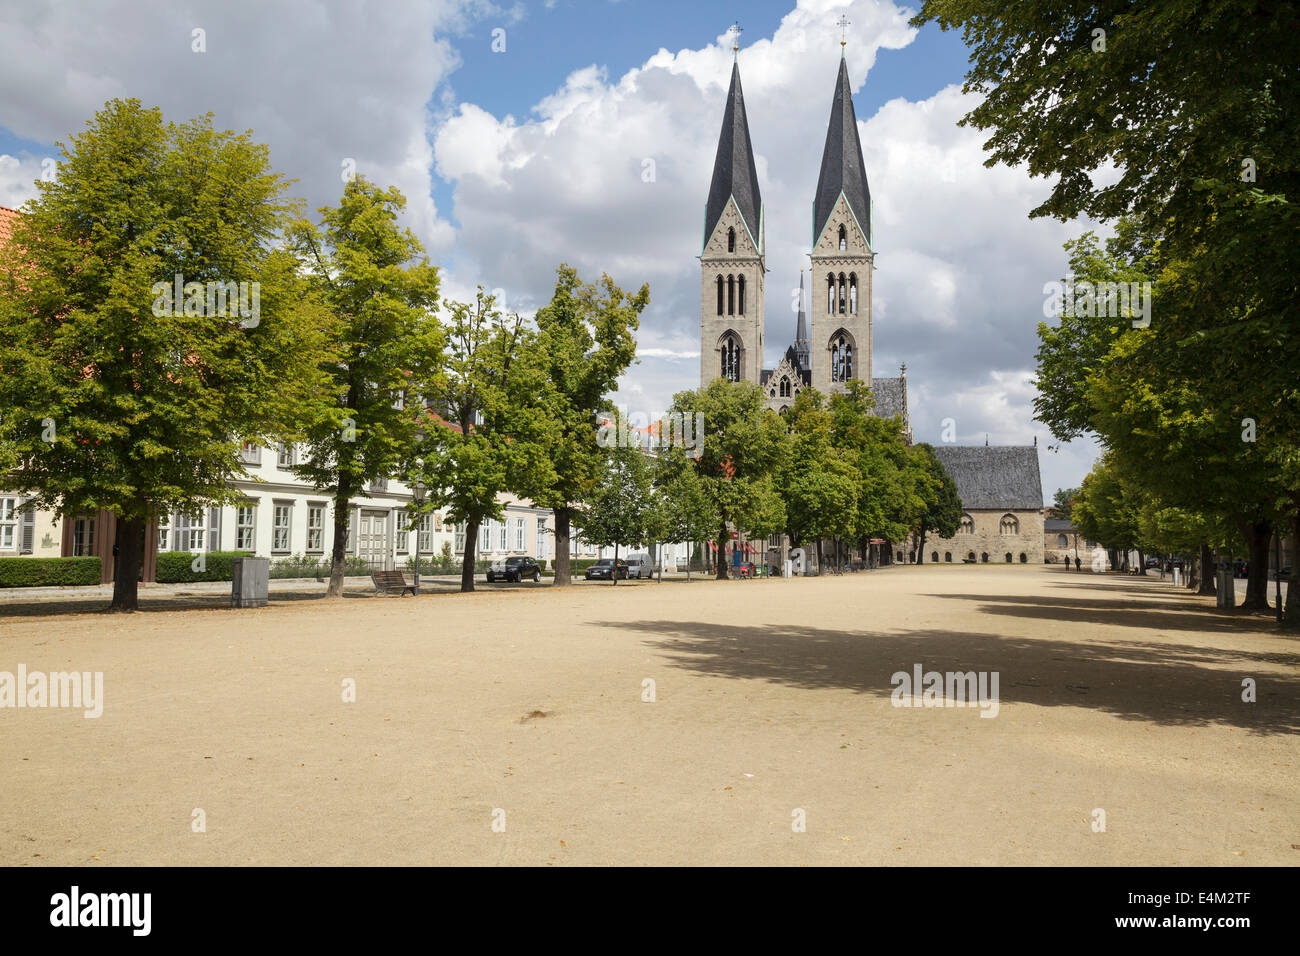 La catedral y la Plaza de la Catedral, Halberstadt, Sajonia-Anhalt, Alemania Foto de stock